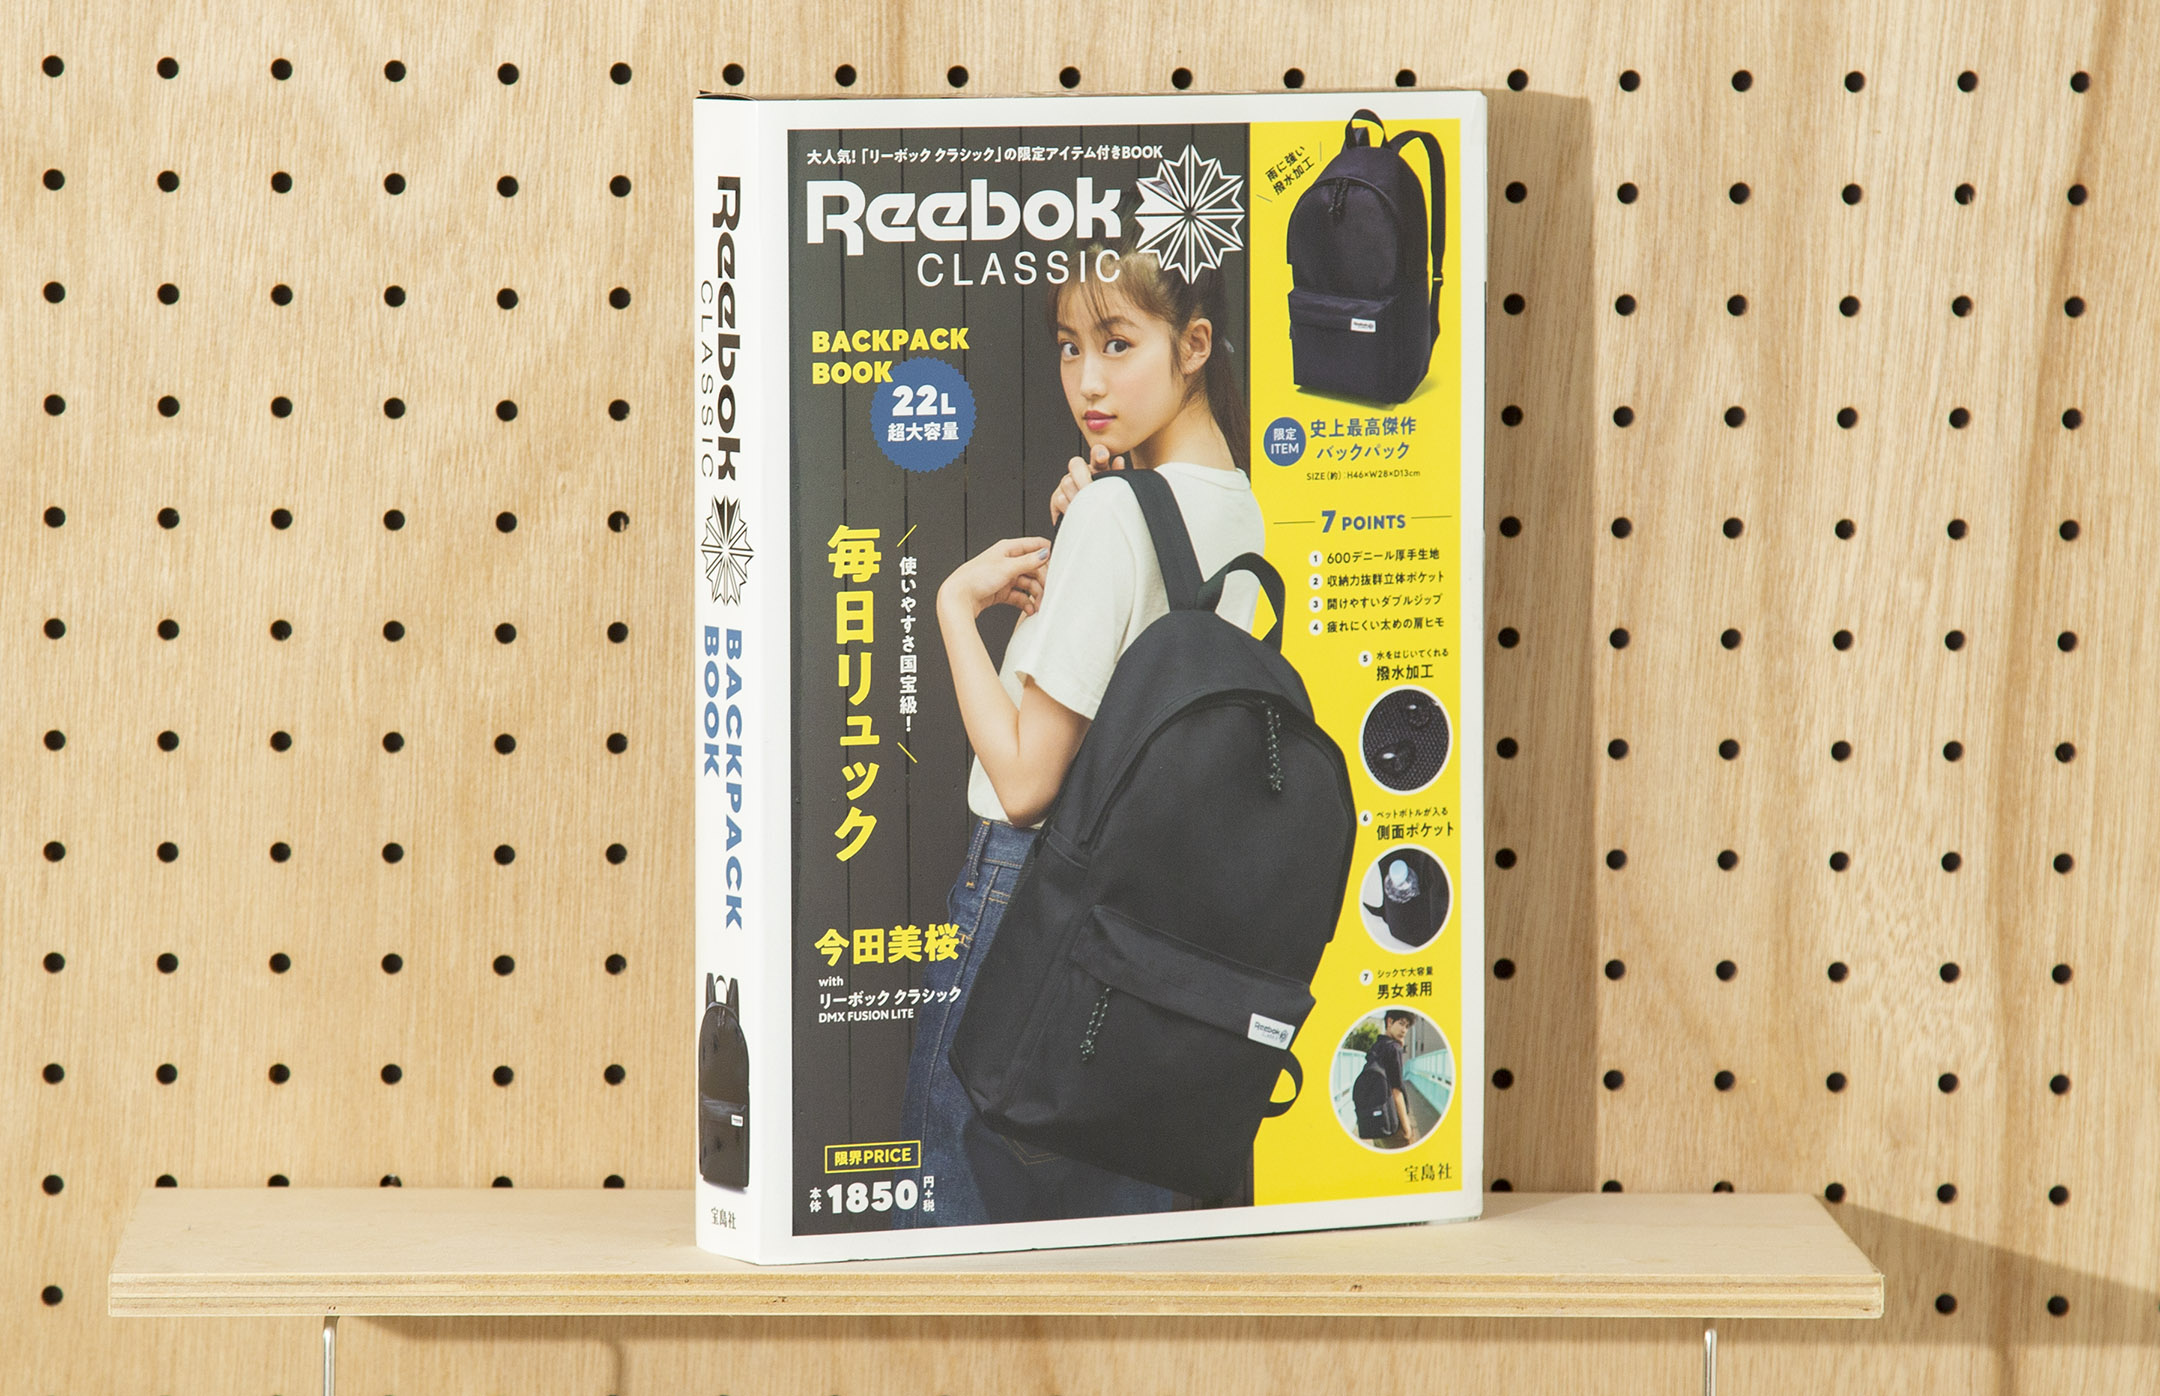 Reebok classic backpack book